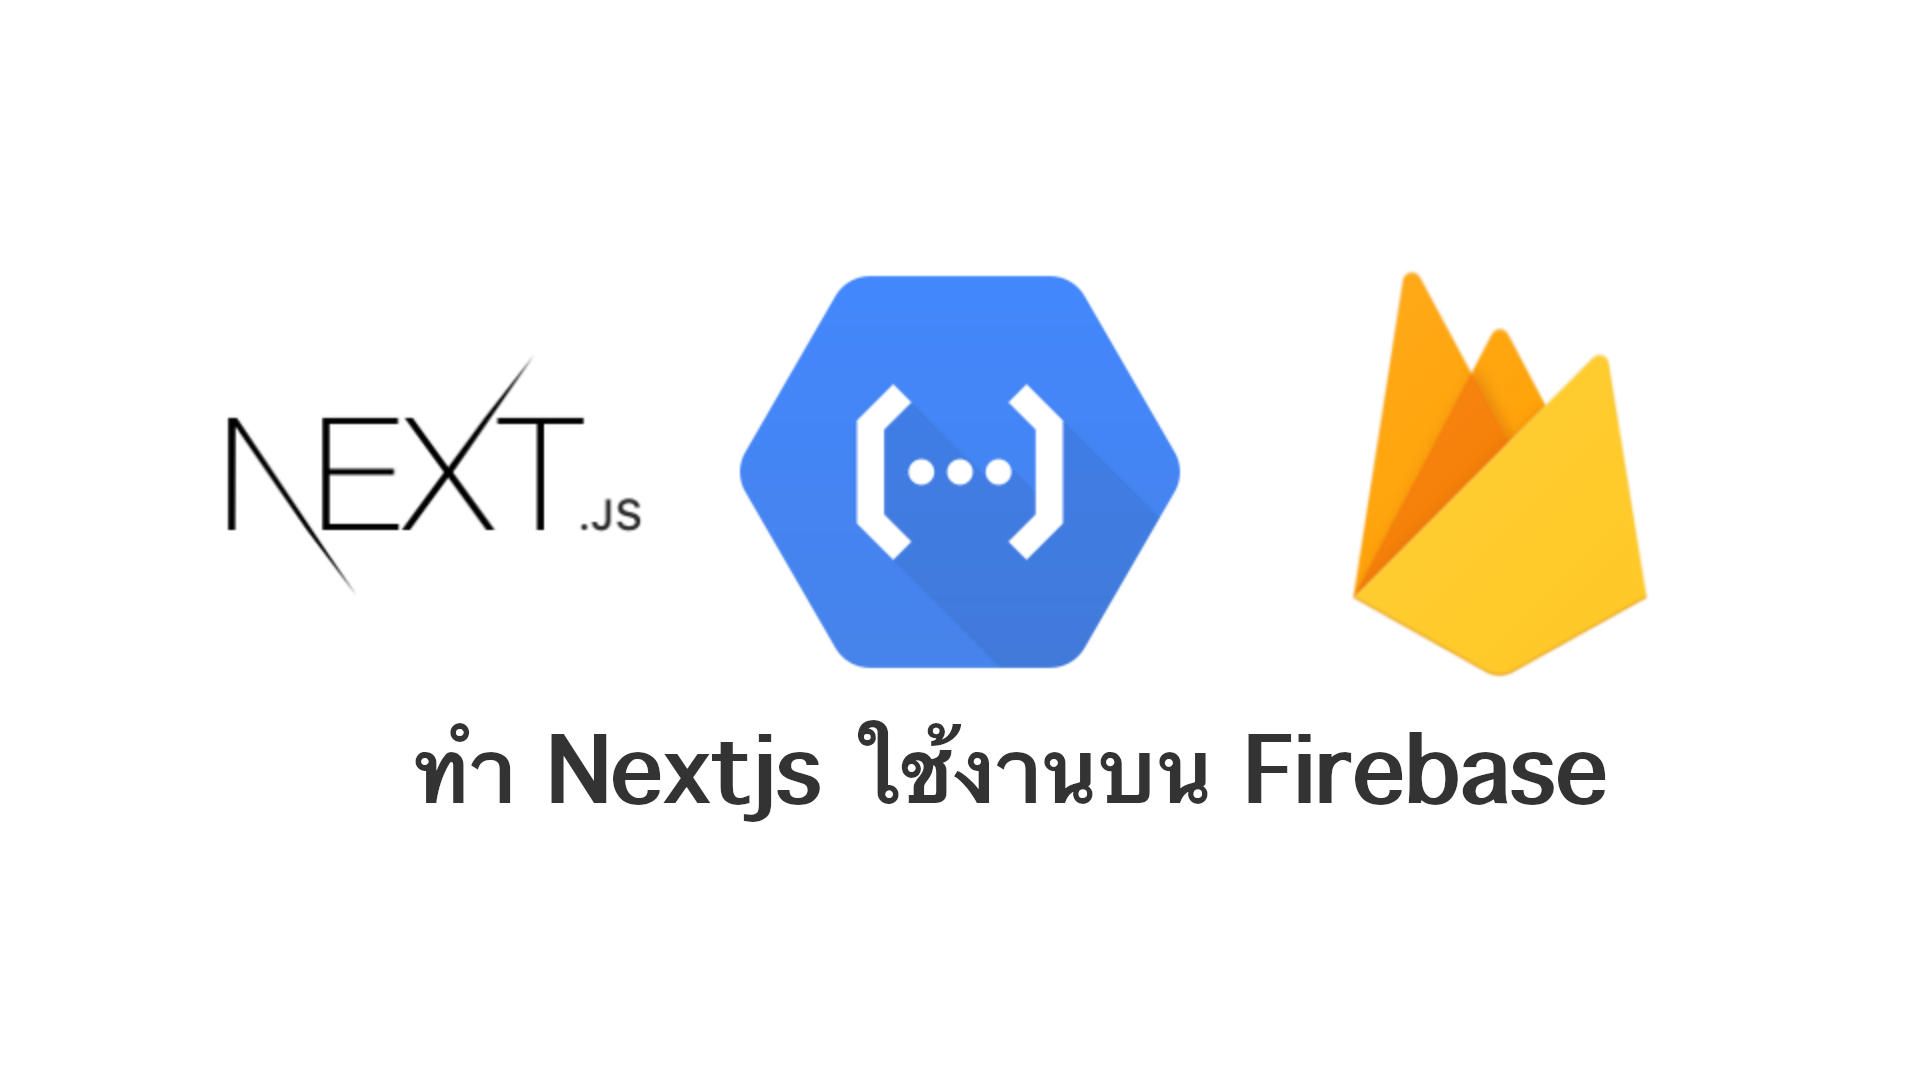 ทำ Nextjs ใช้งานบน Firebase